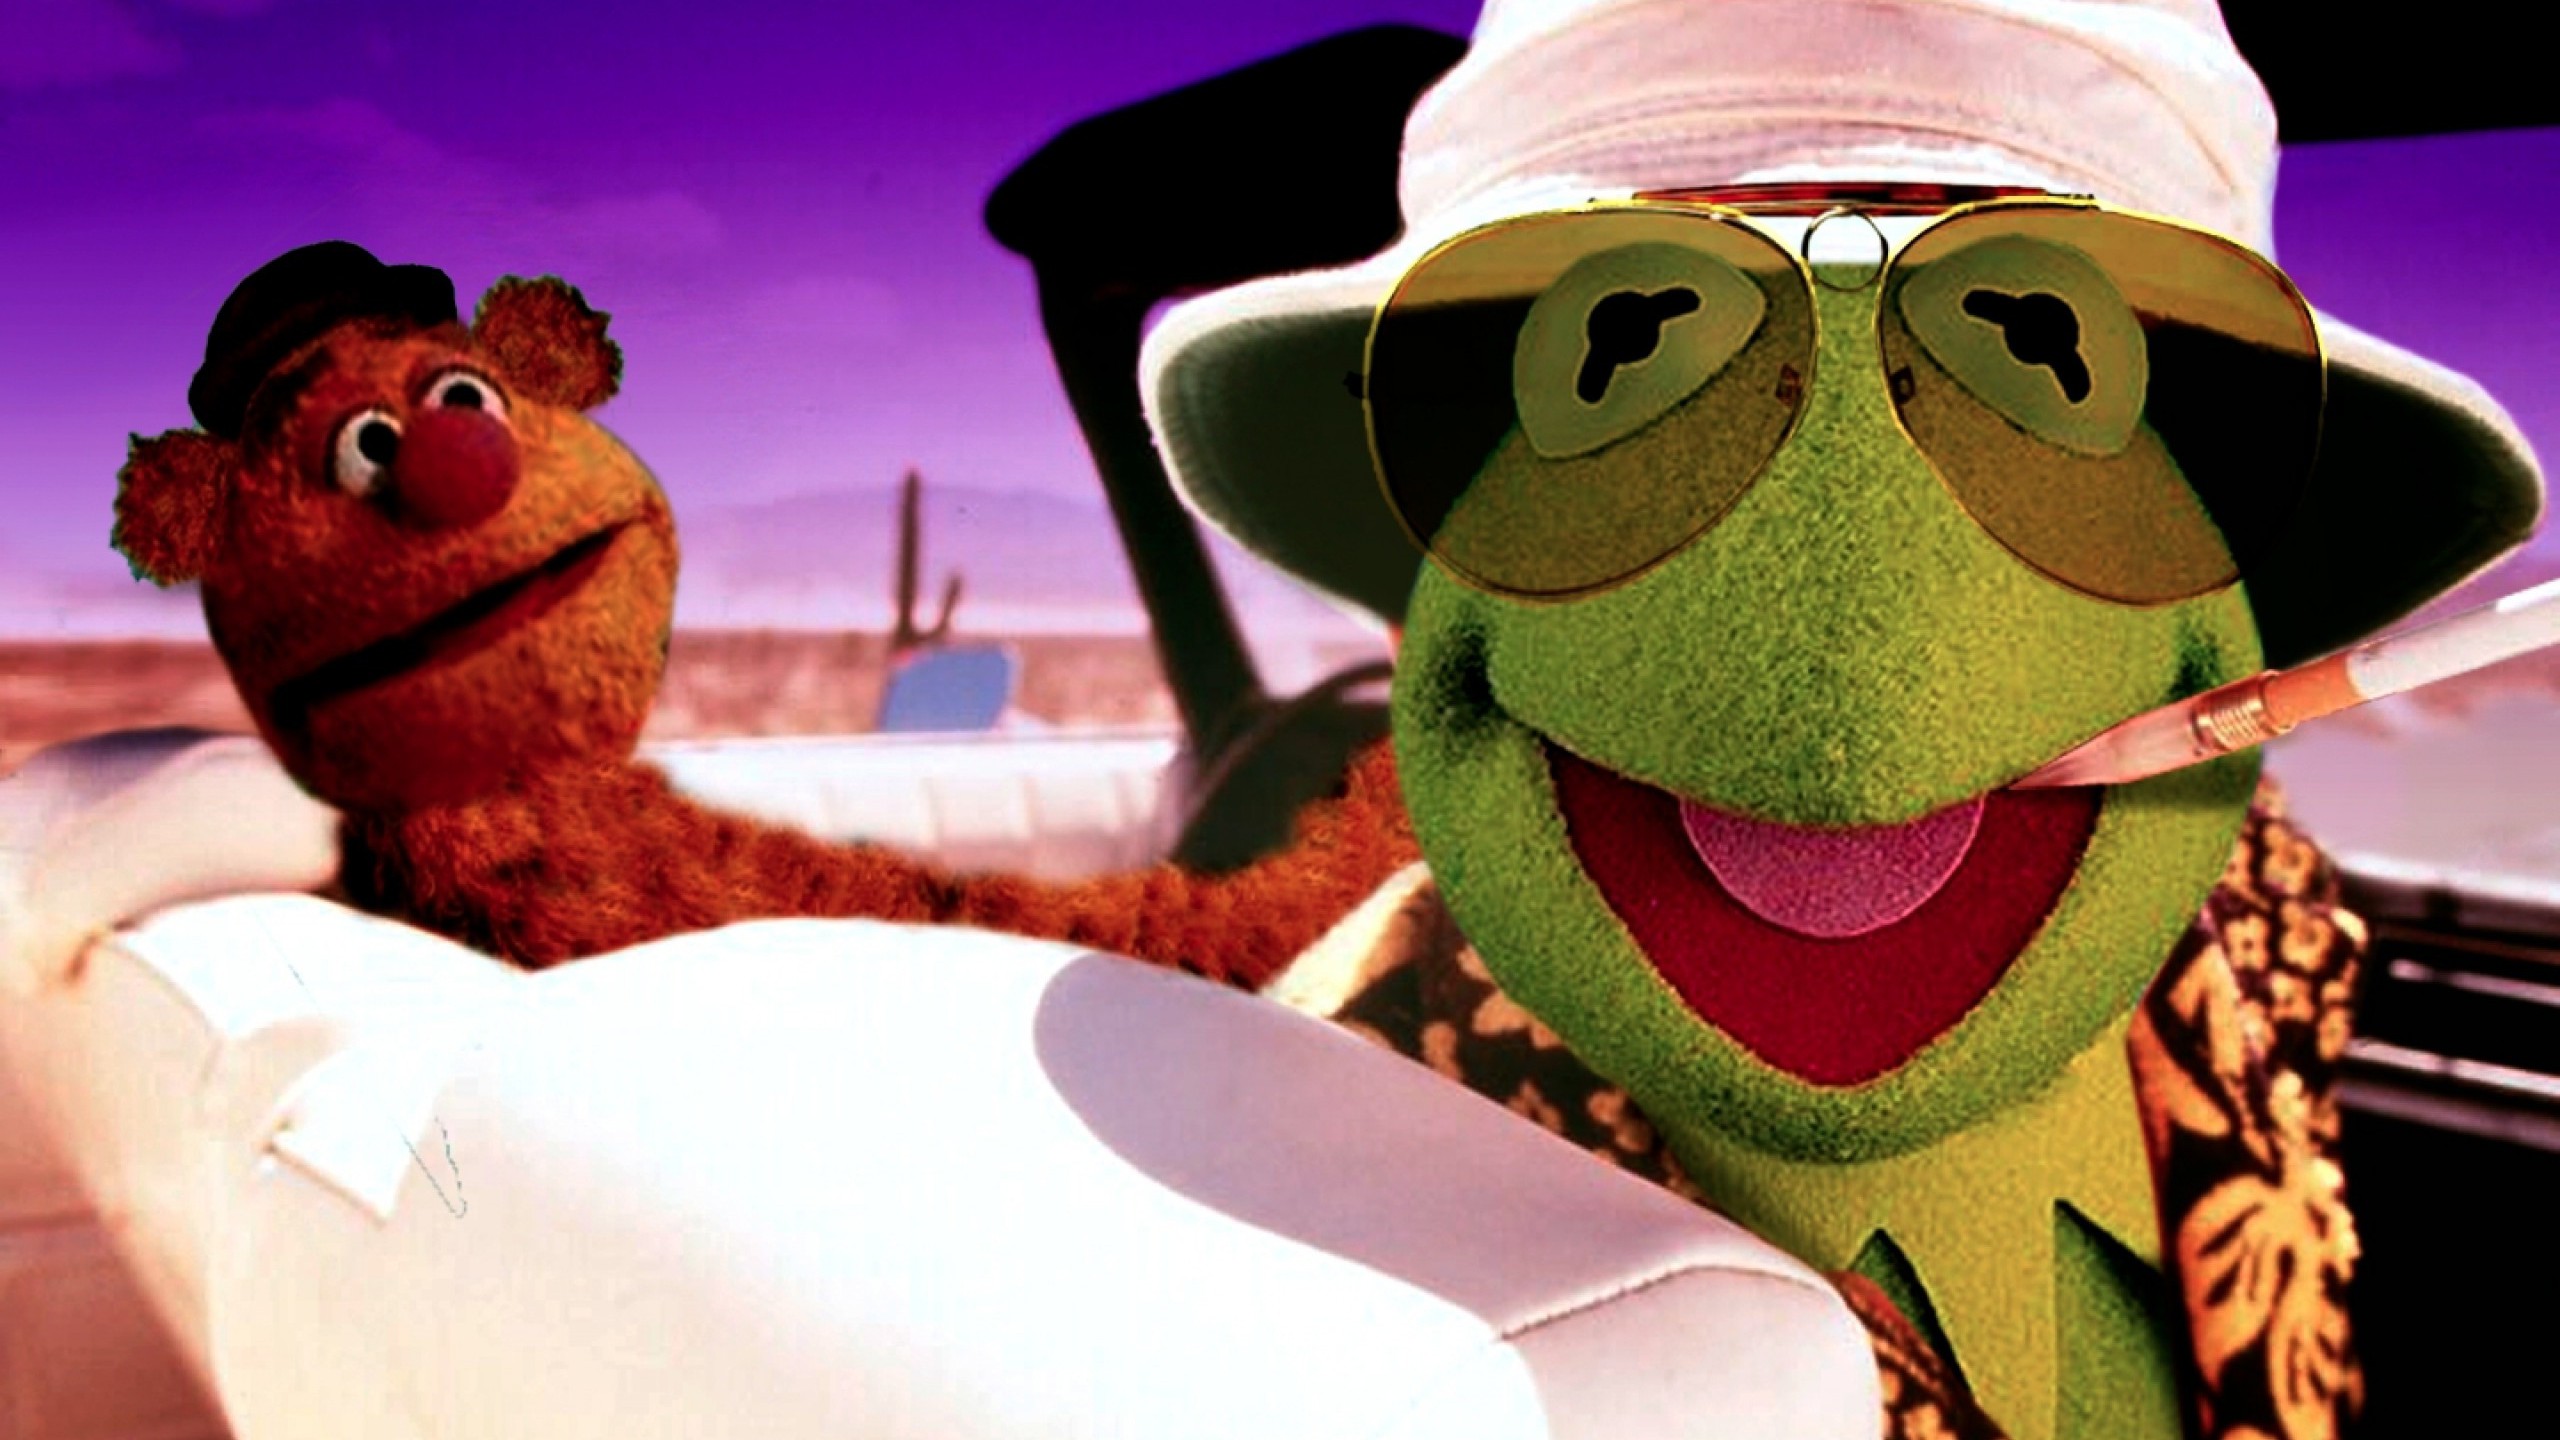 Cars Fear And Loathing In Las Vegas Kermit The Frog - Fearless In Las Vegas - HD Wallpaper 